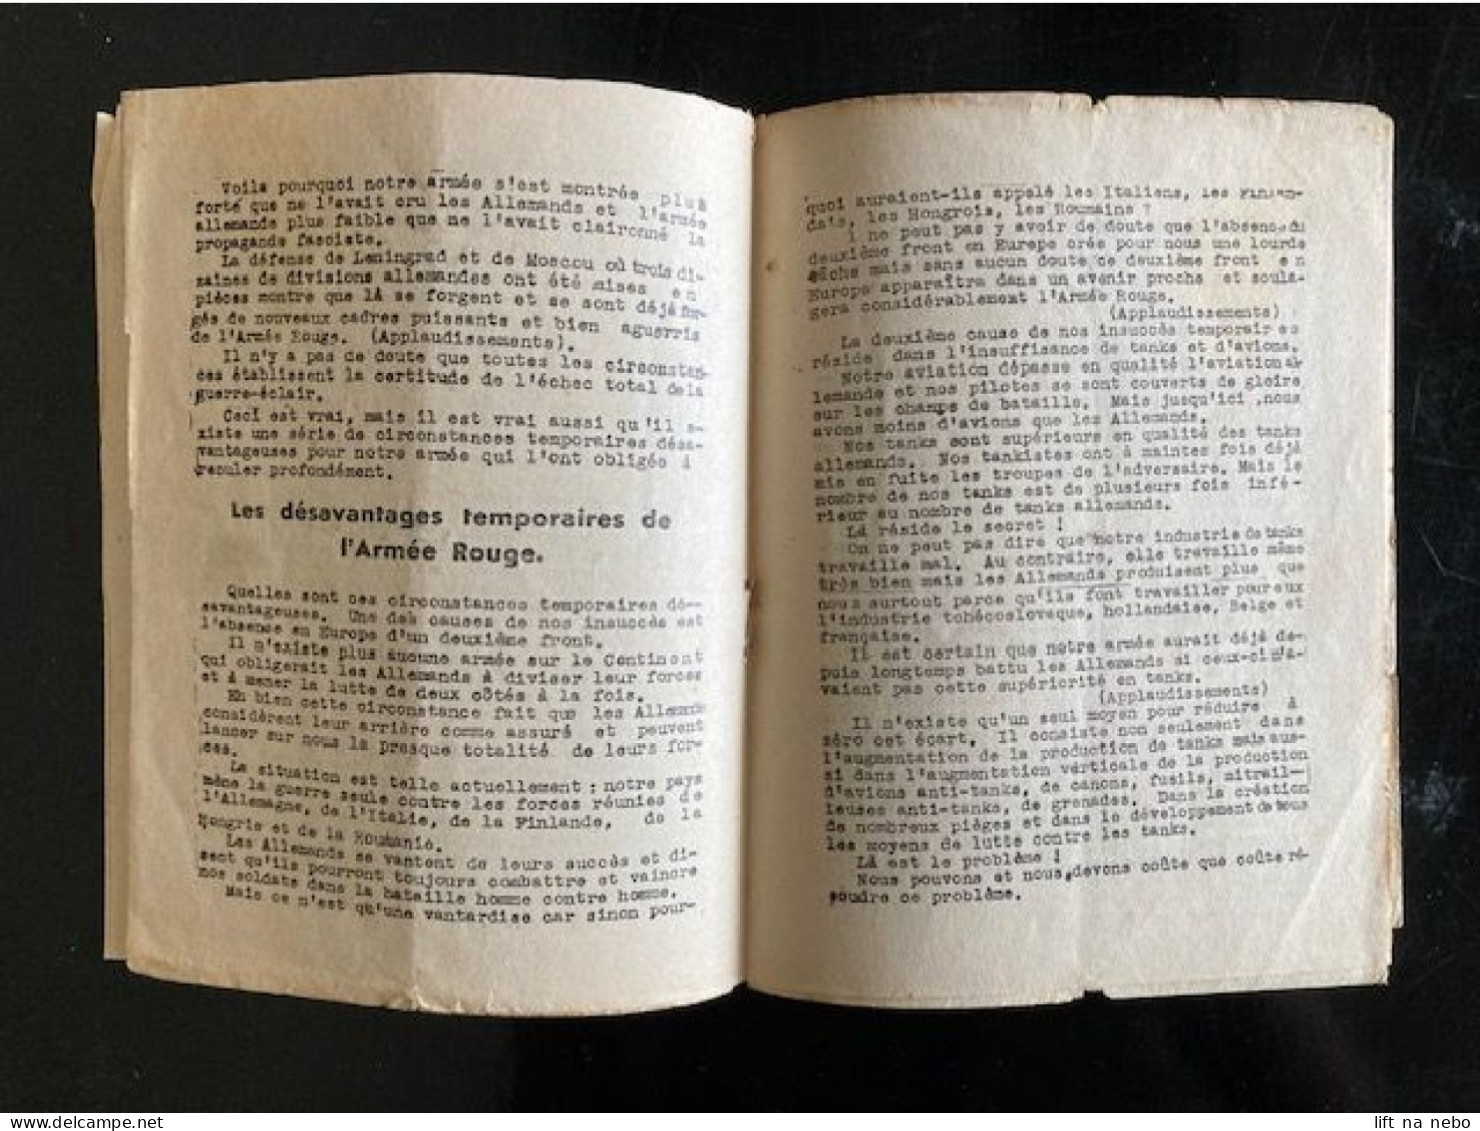 Tract Presse Clandestine Résistance Belge WWII WW2 J.Staline 'La Victoire Sera à Nous!' Brochure 16 Pages - Dokumente